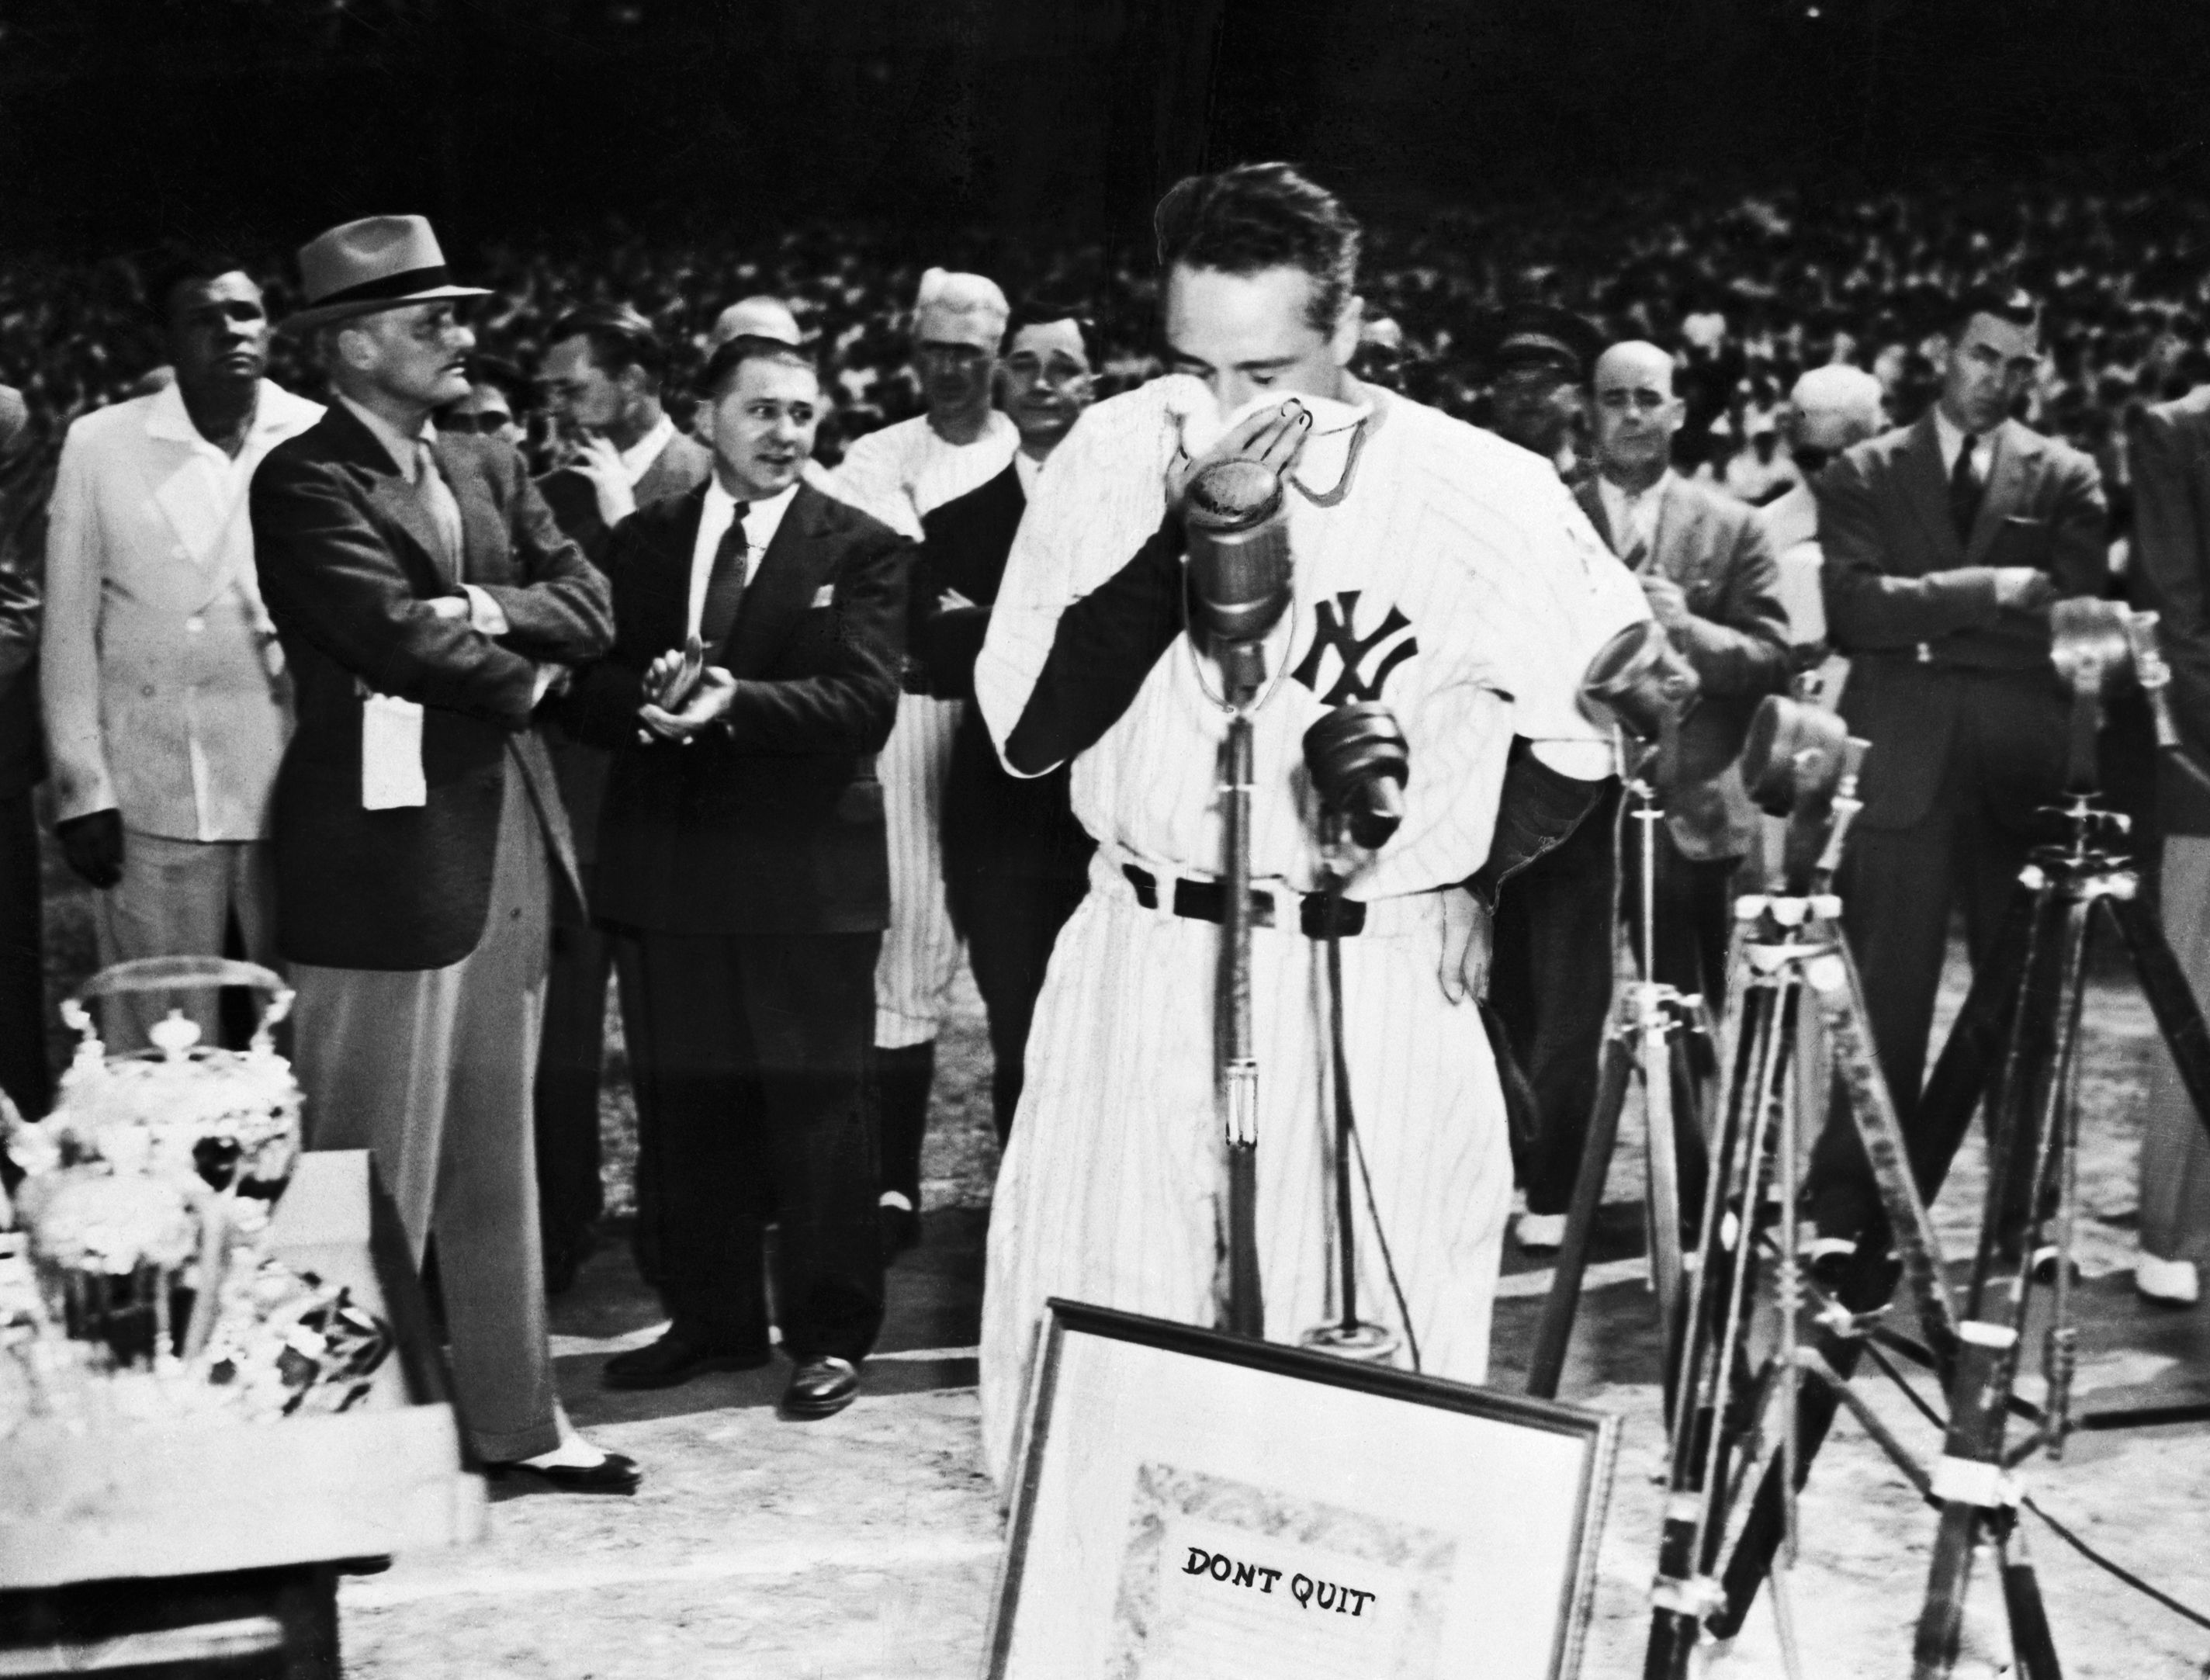 Walking in Lou Gehrig's footsteps, echoing his words